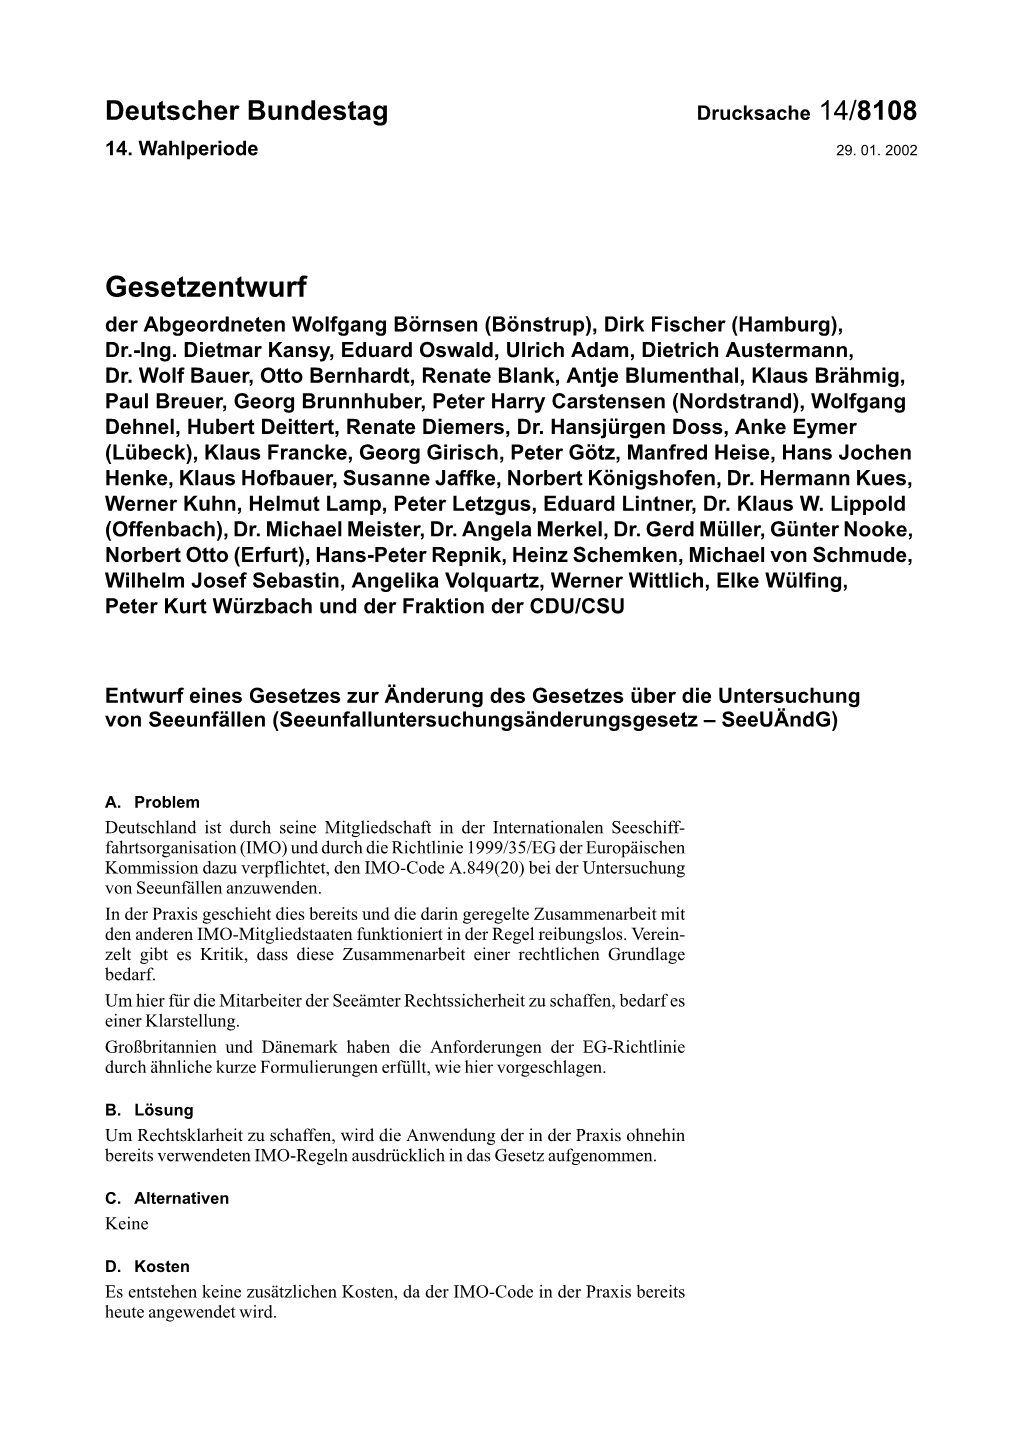 Gesetzentwurf Der Abgeordneten Wolfgang Börnsen (Bönstrup), Dirk Fischer (Hamburg), Dr.-Ing